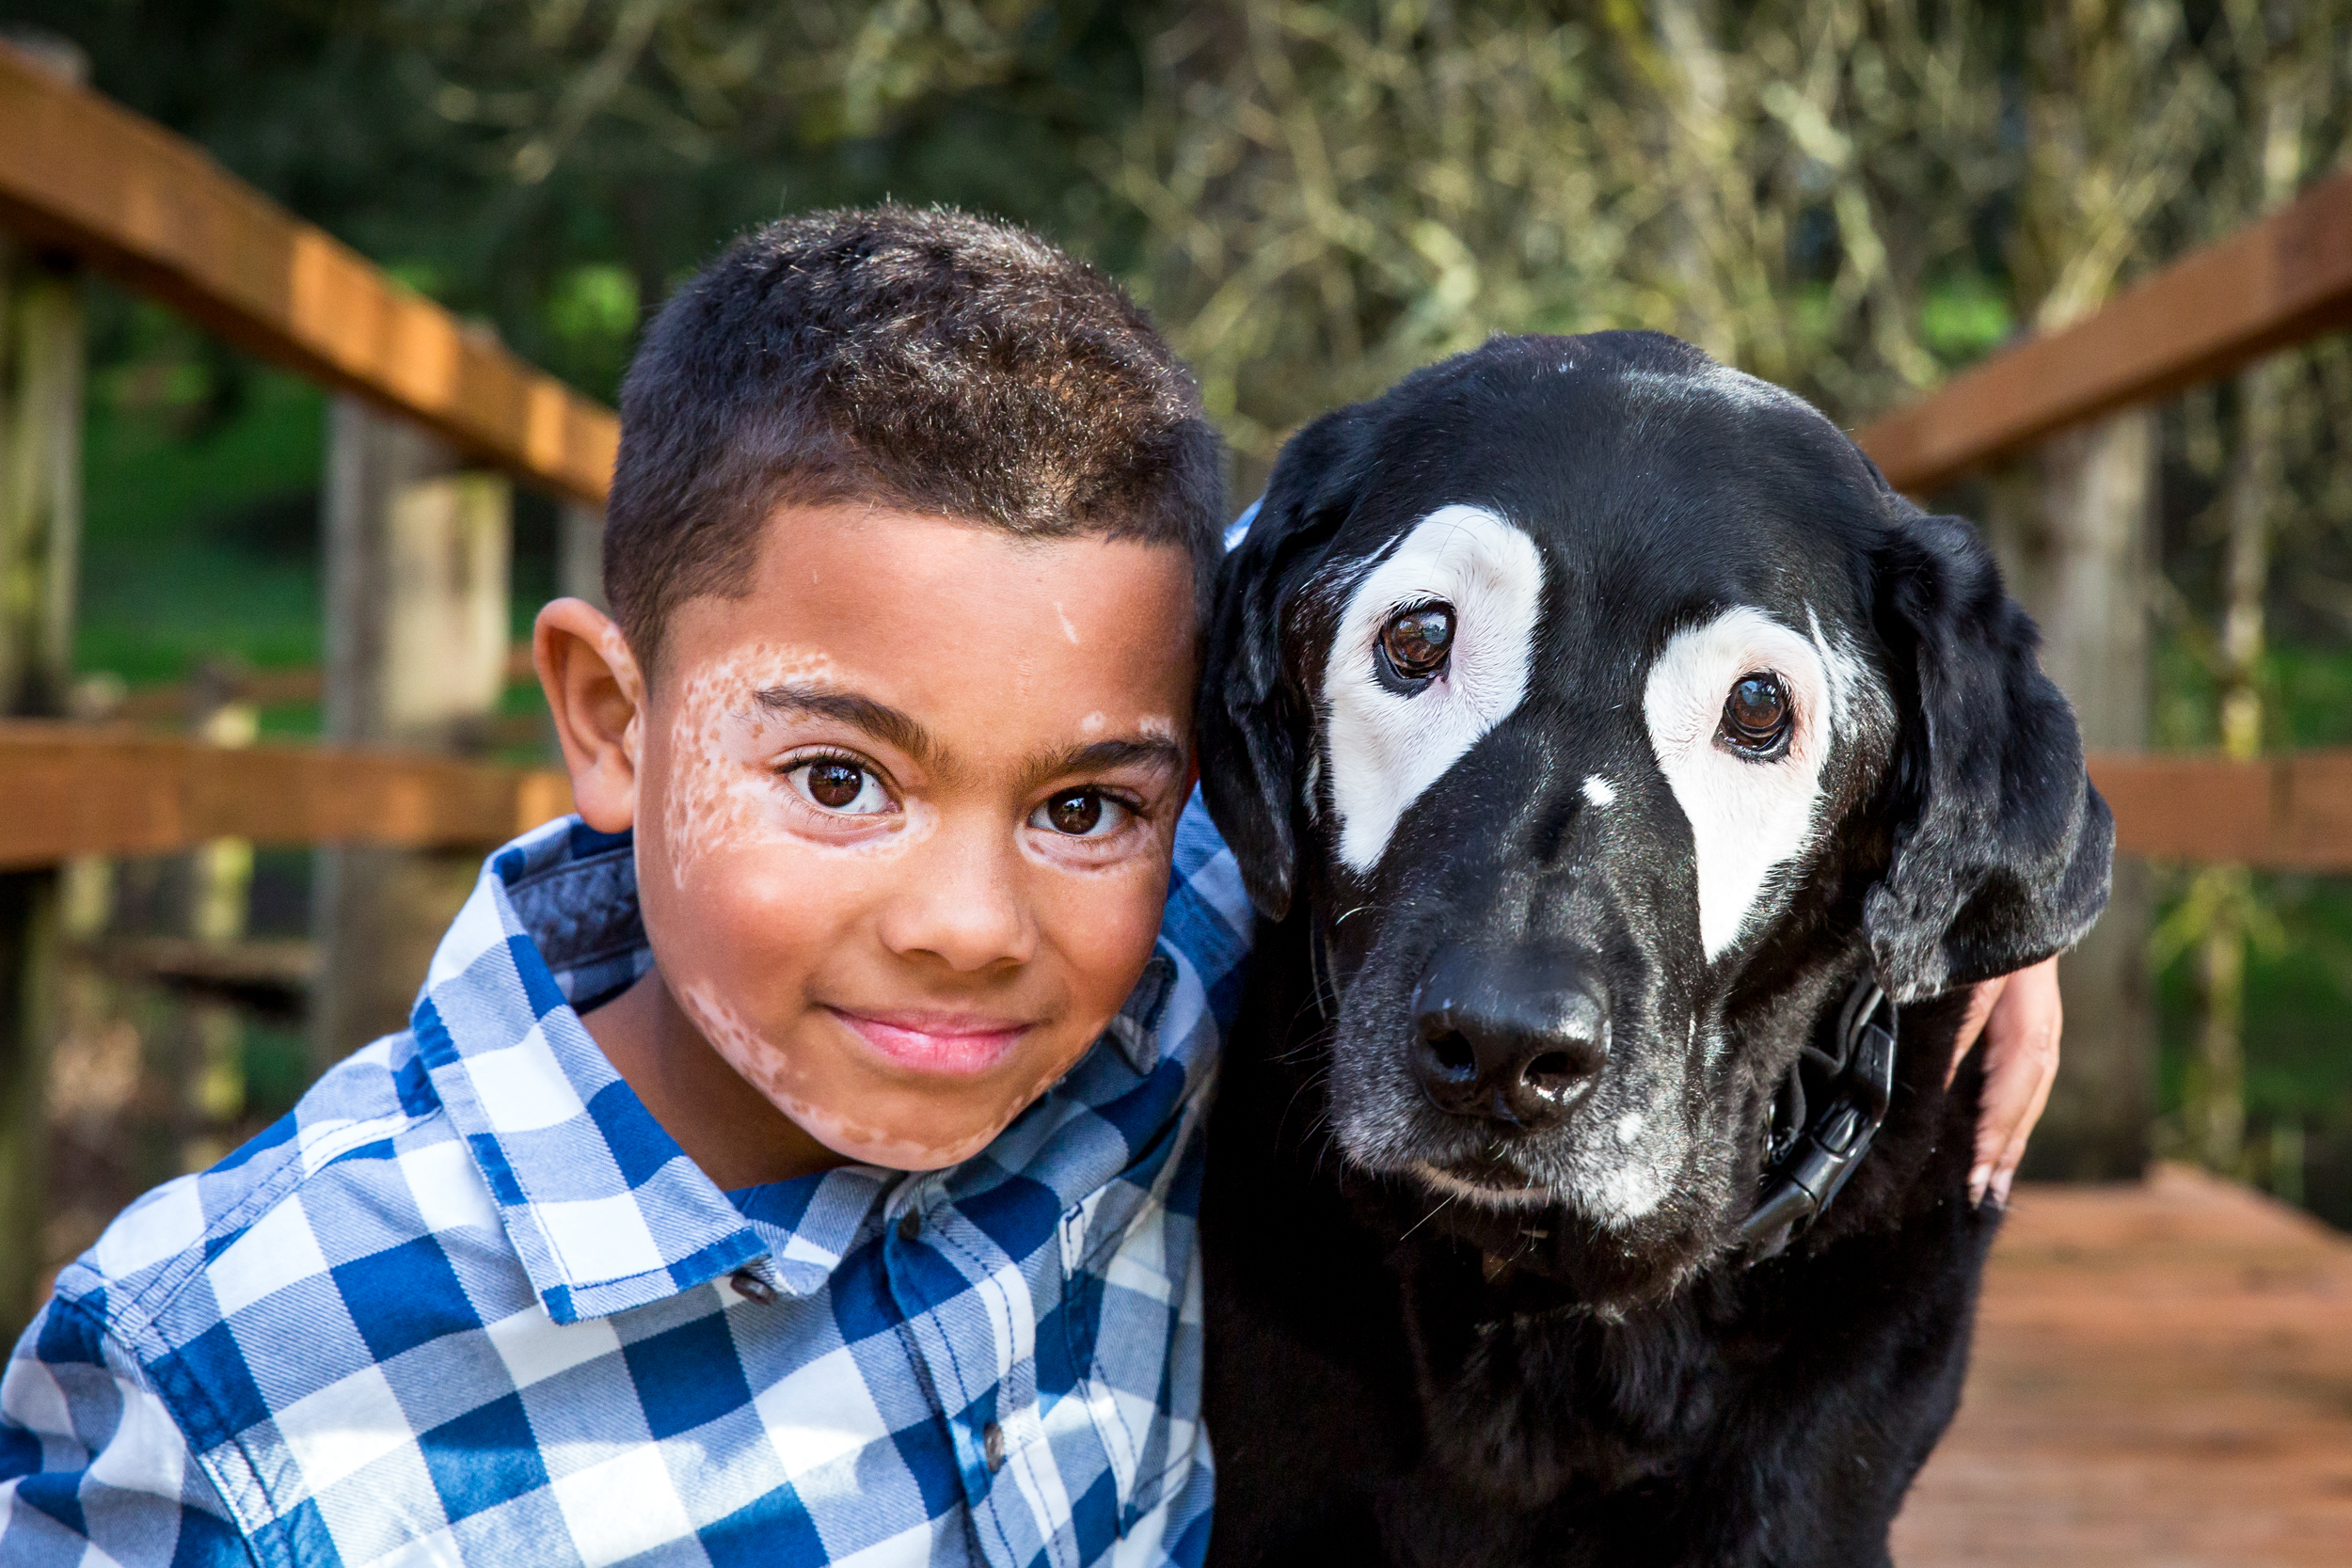 Rowdy the Dog with Carter, who both have vitiligo